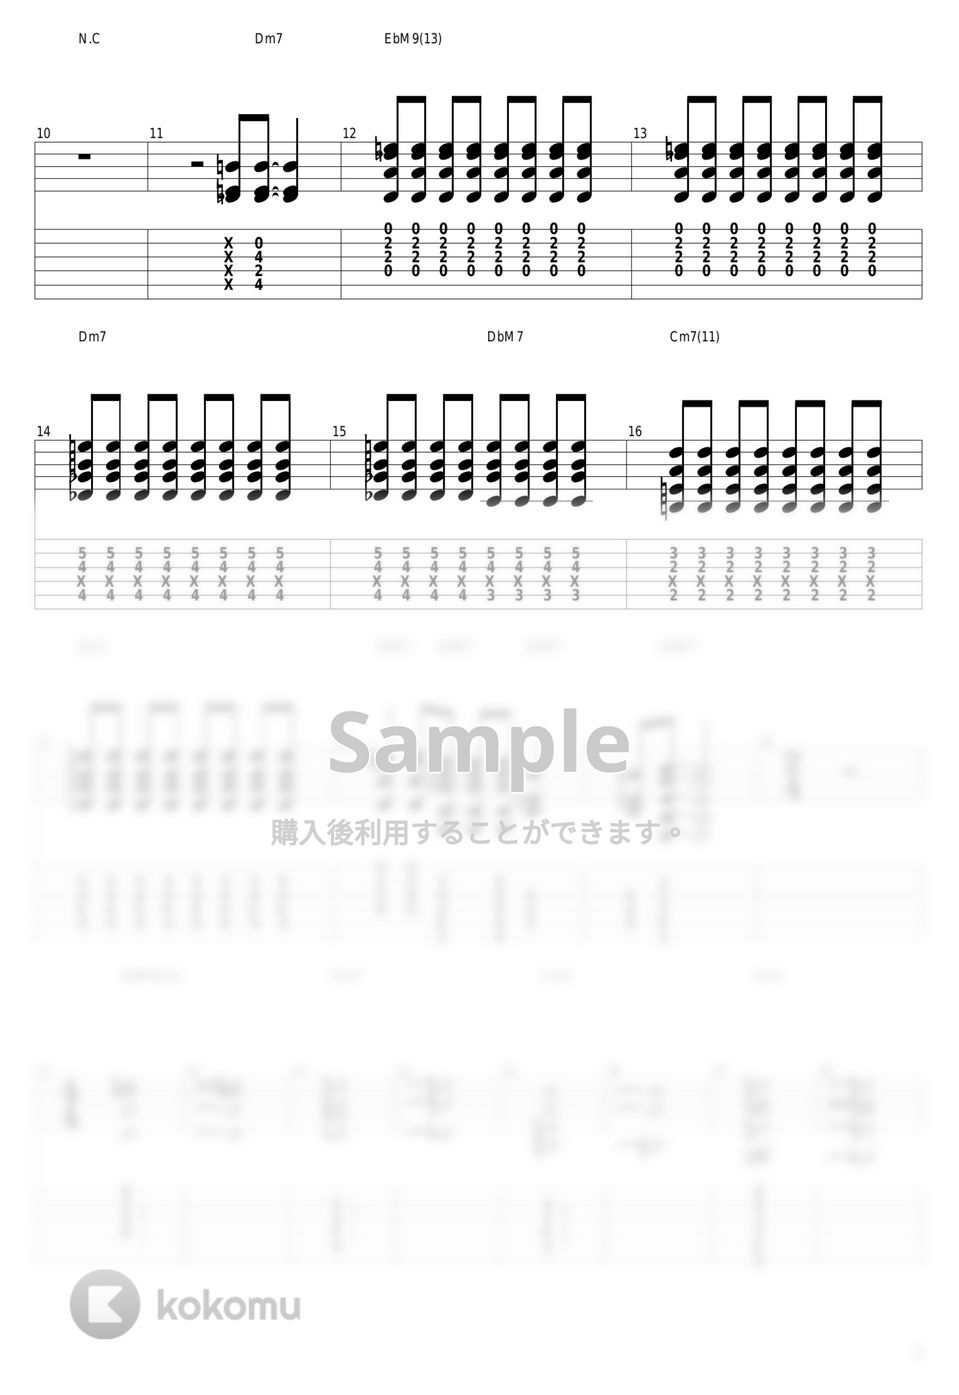 結束バンド - 光の中へ (喜多ちゃんパート) by guitar cover with tab